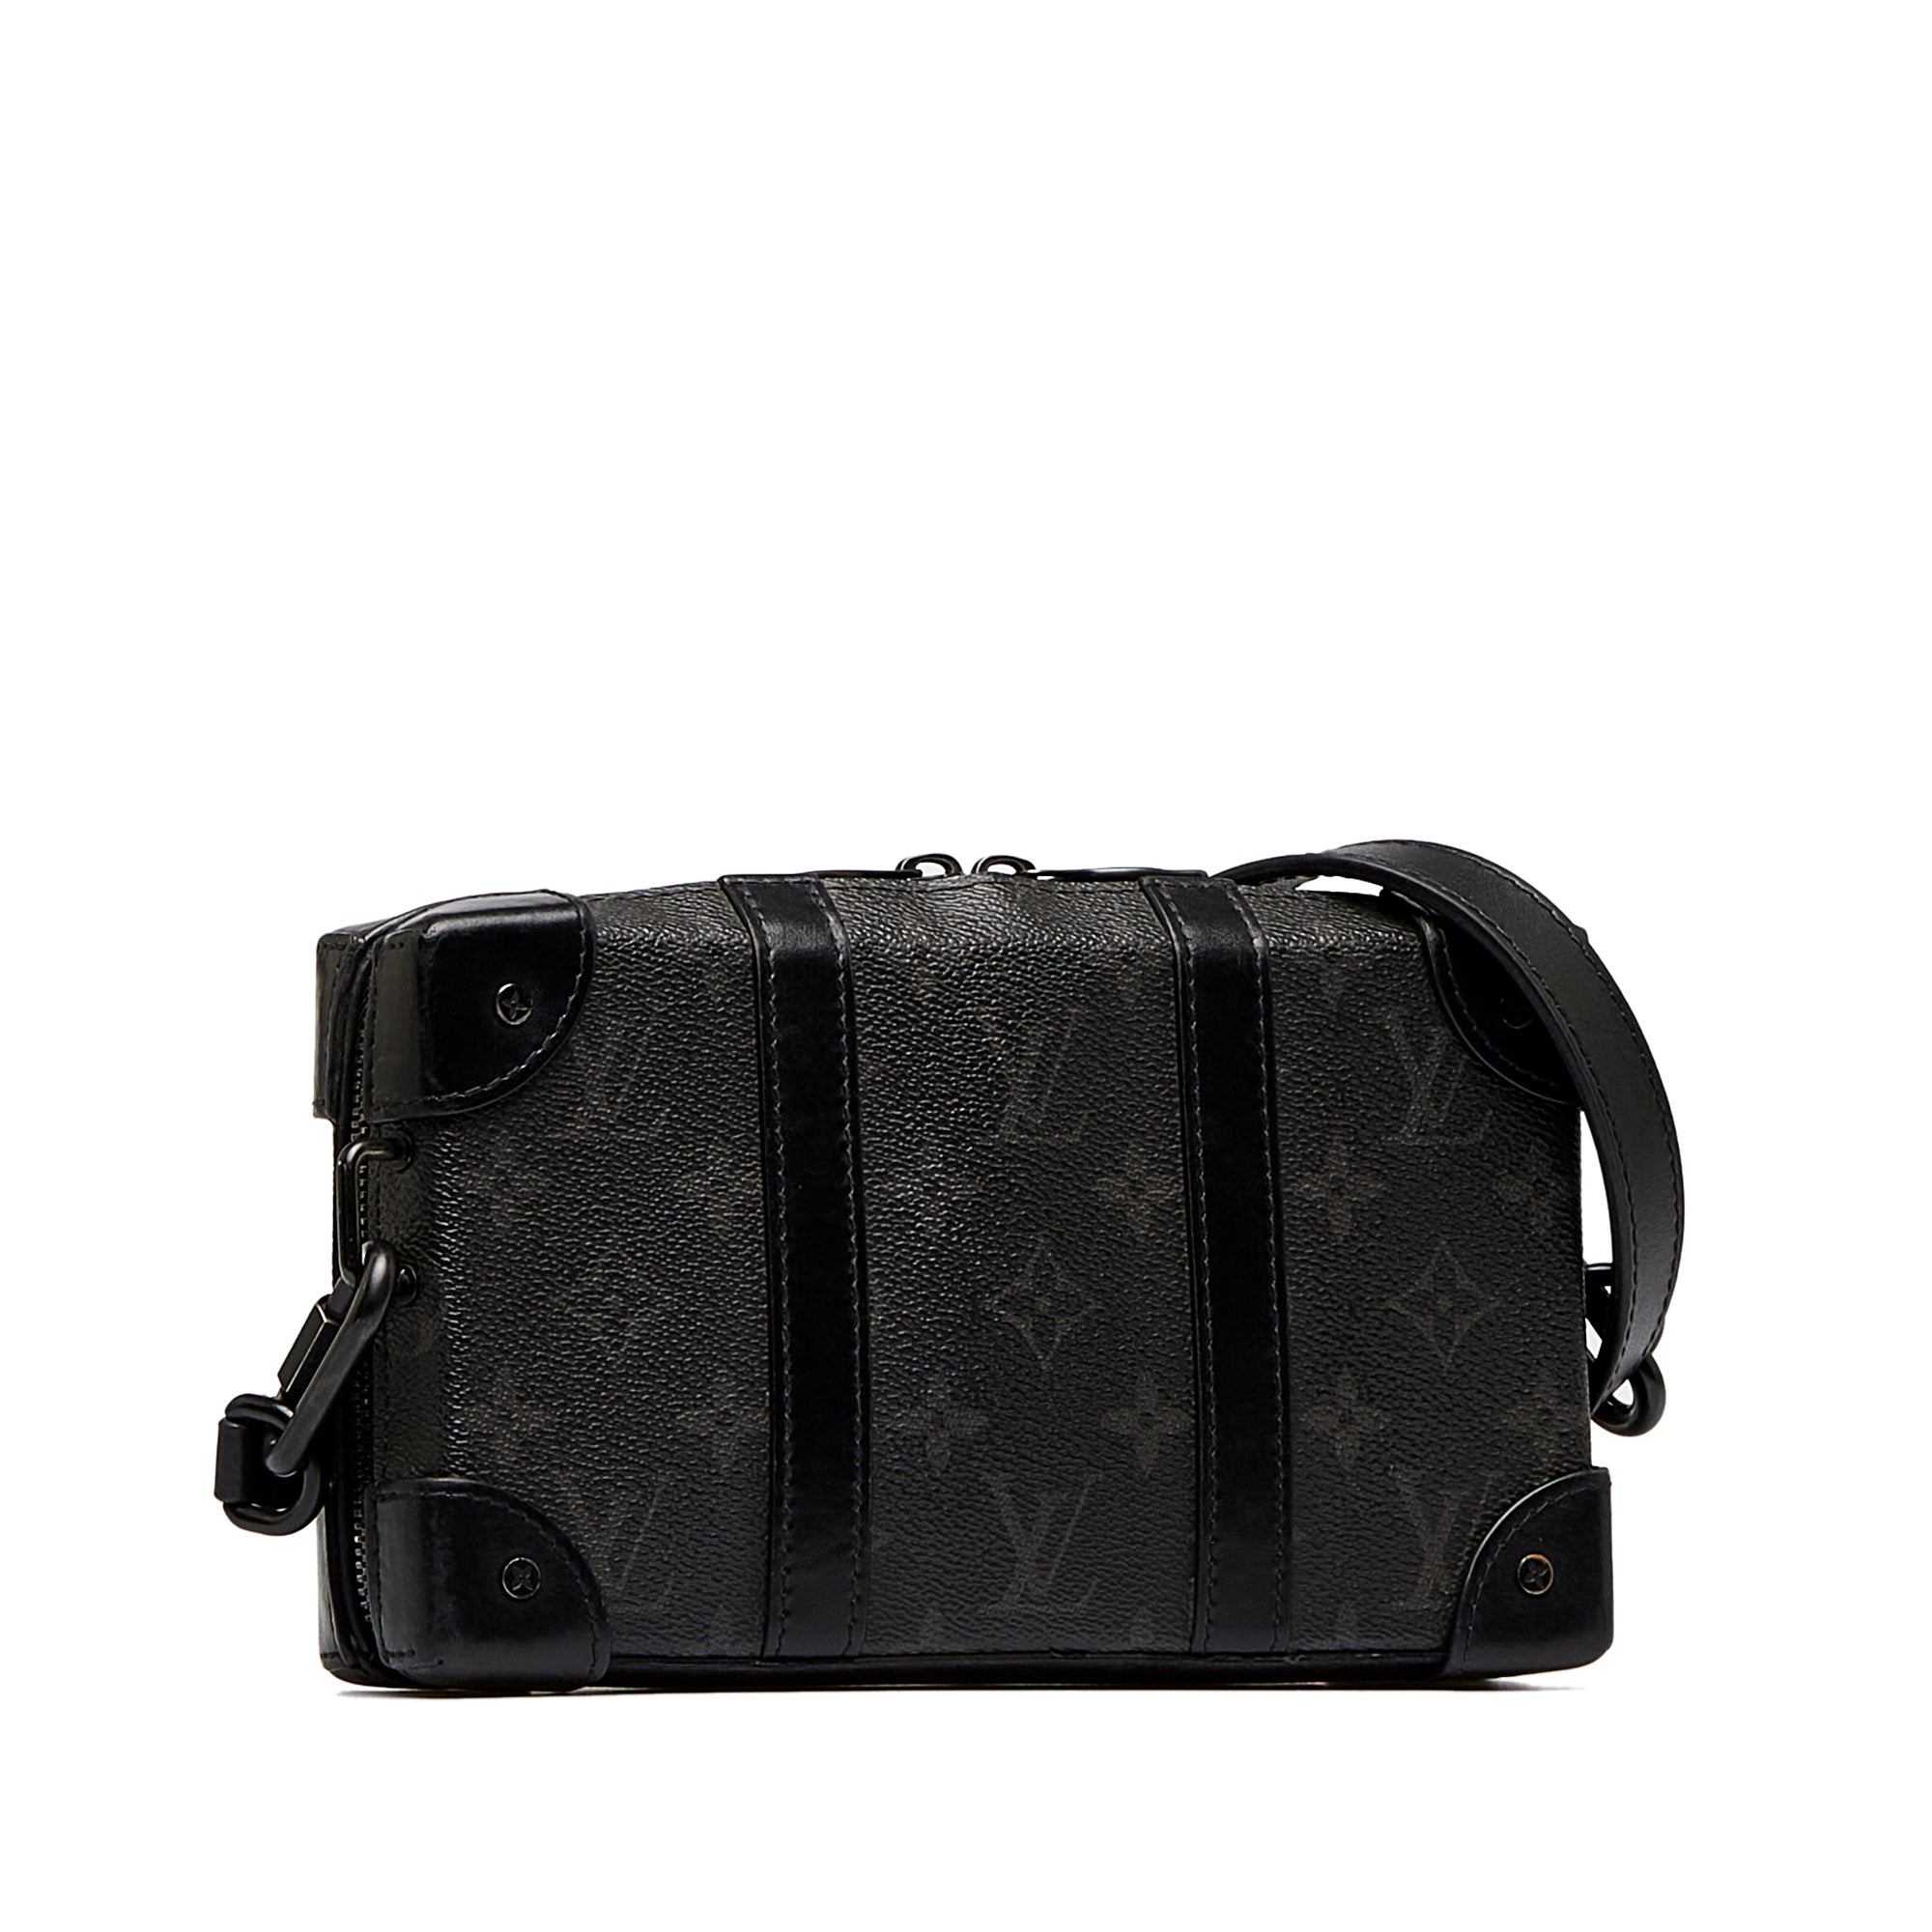 Louis Vuitton - Trunk Messenger Bag - Monogram Canvas - Eclipse - Men - Luxury